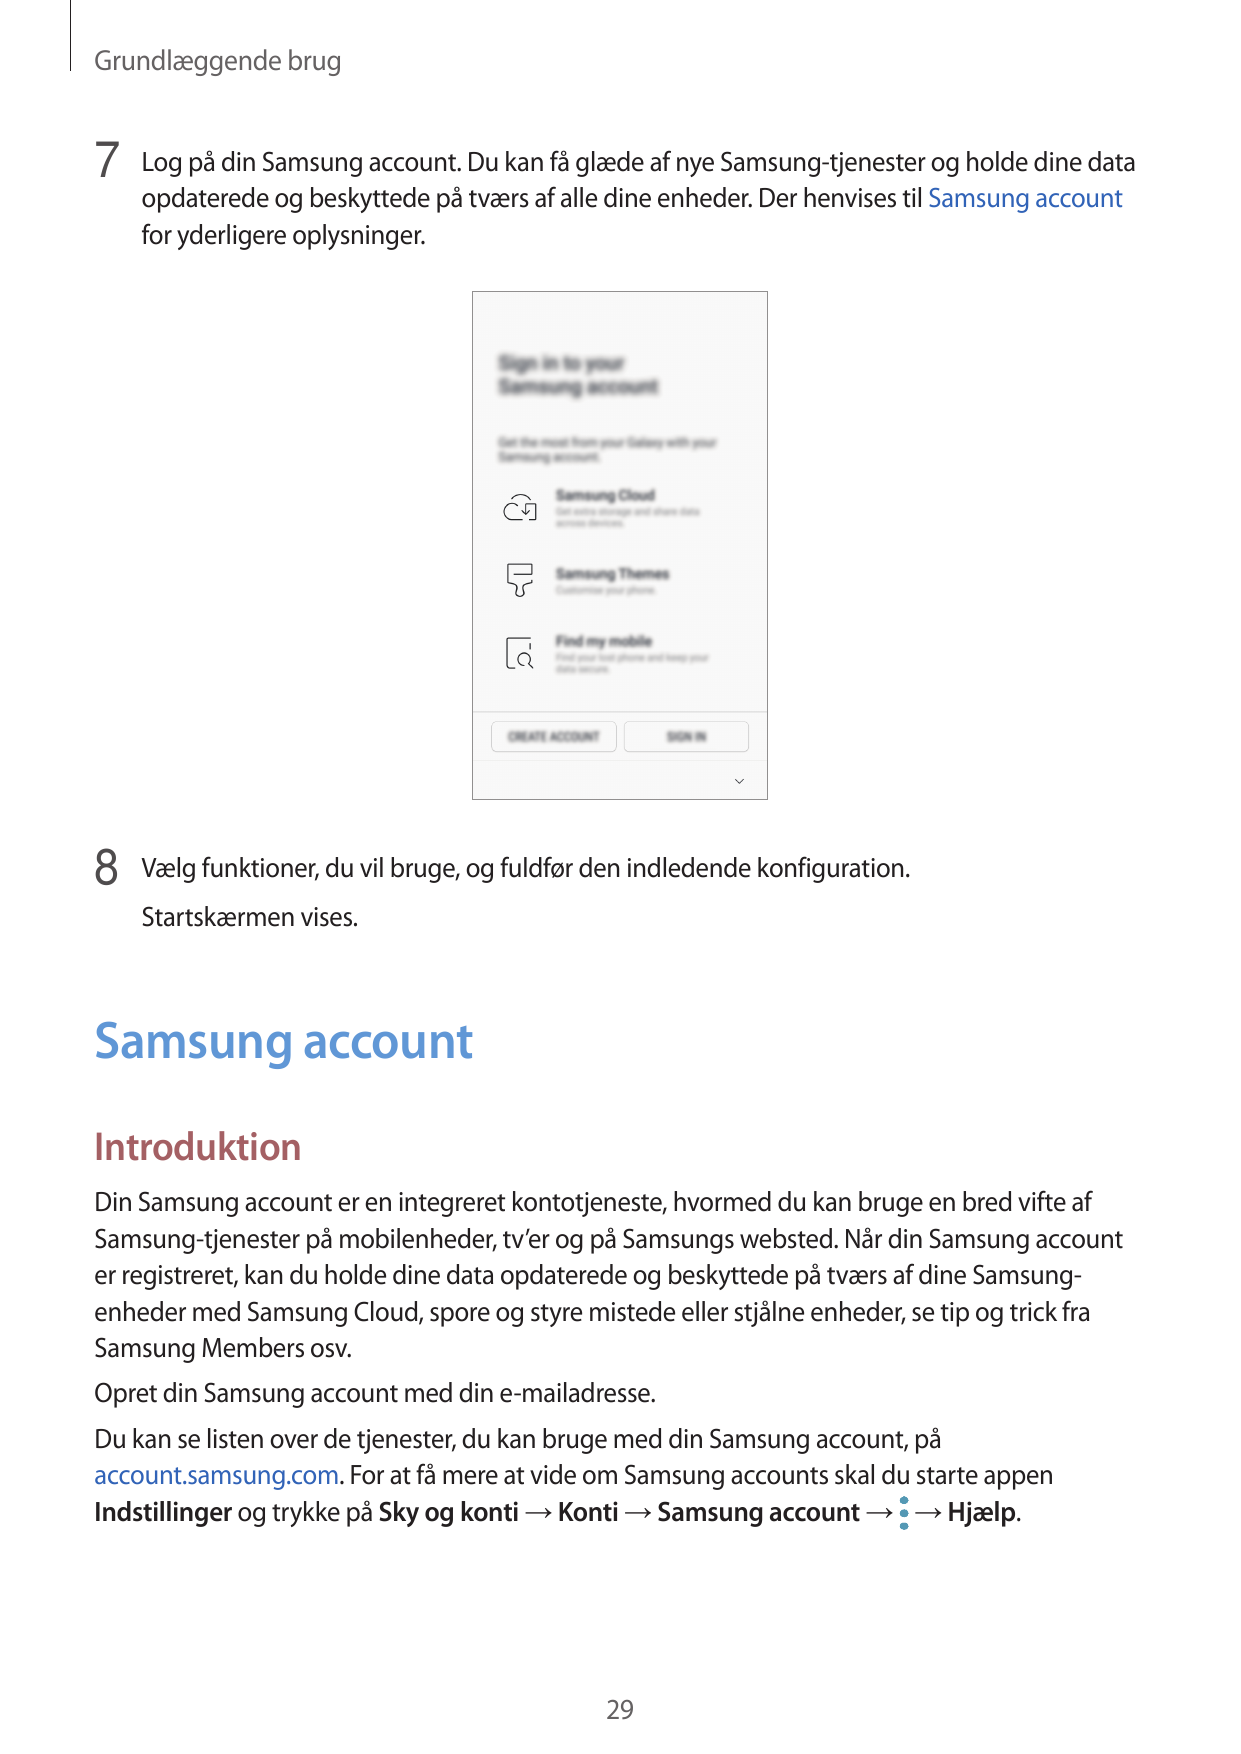 Grundlæggende brug7 Log på din Samsung account. Du kan få glæde af nye Samsung-tjenester og holde dine dataopdaterede og beskytt